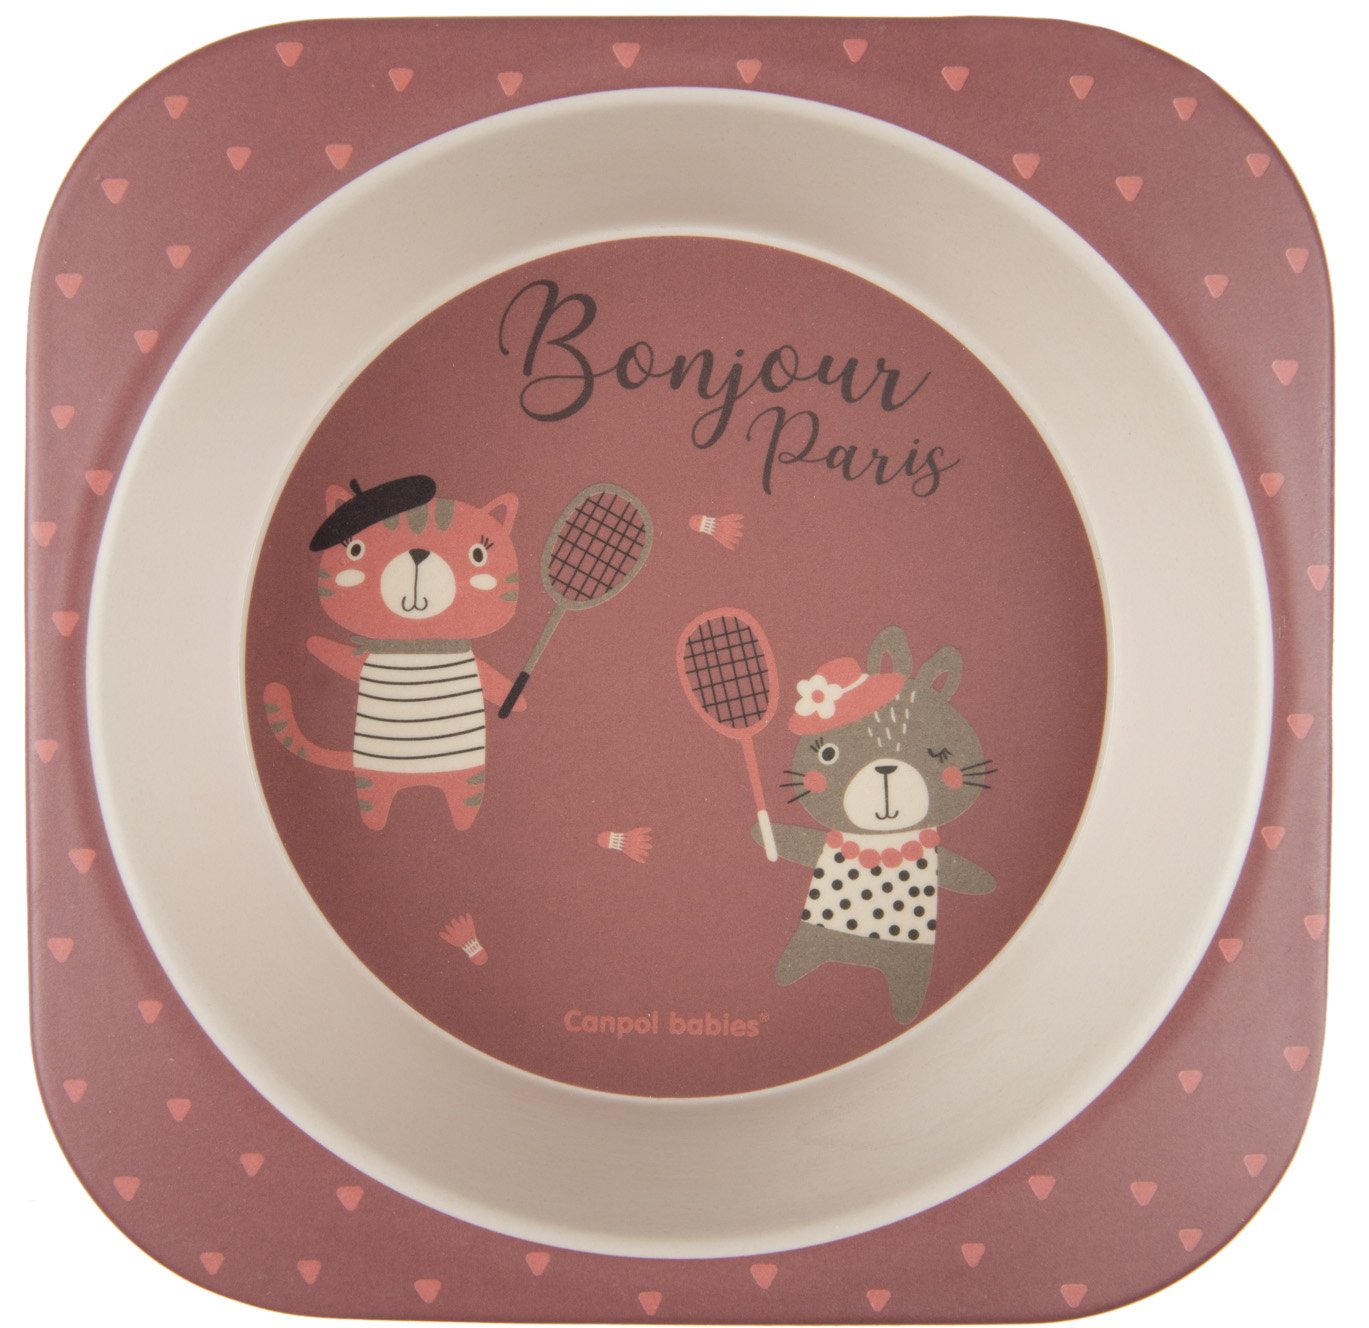 Набір посуду Canpol babies Bonjour Paris, 5 предметів, червоний (9/227_red) - фото 2